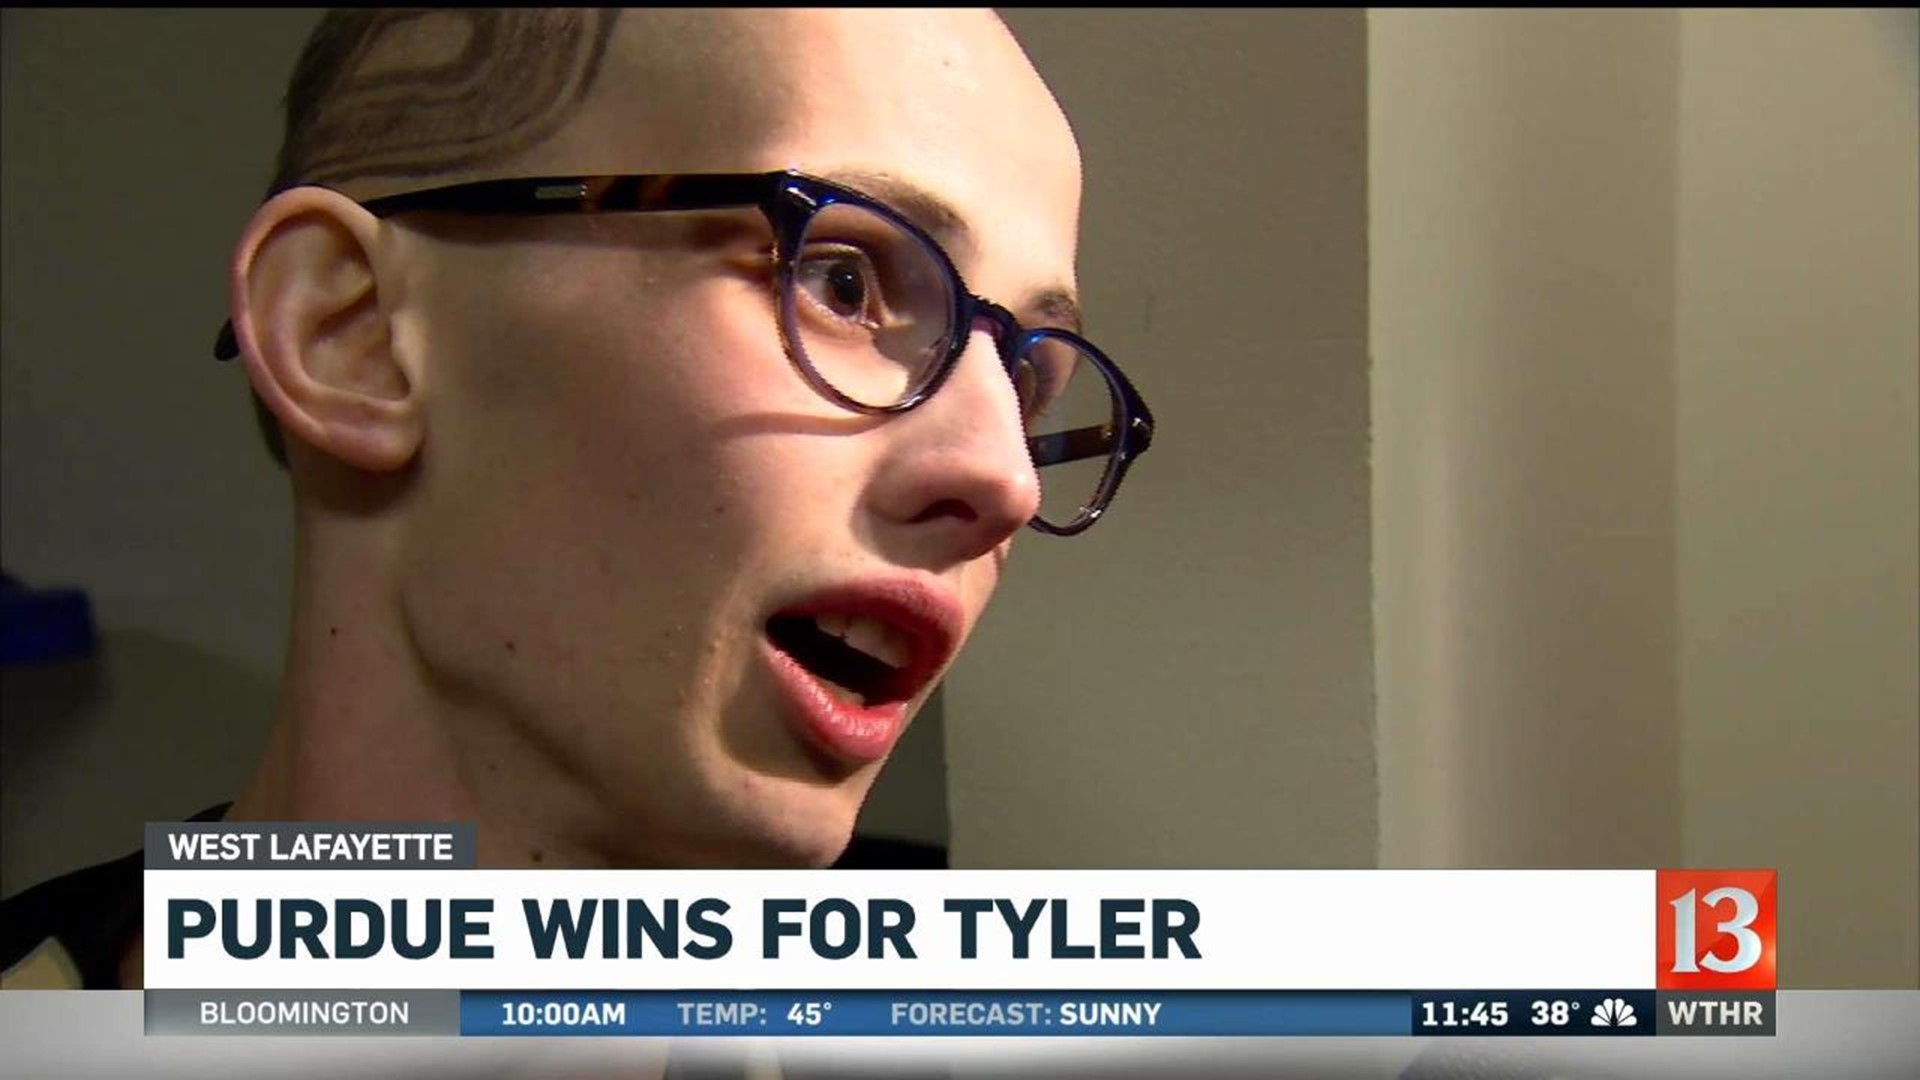 Purdue wins for Tyler Trent